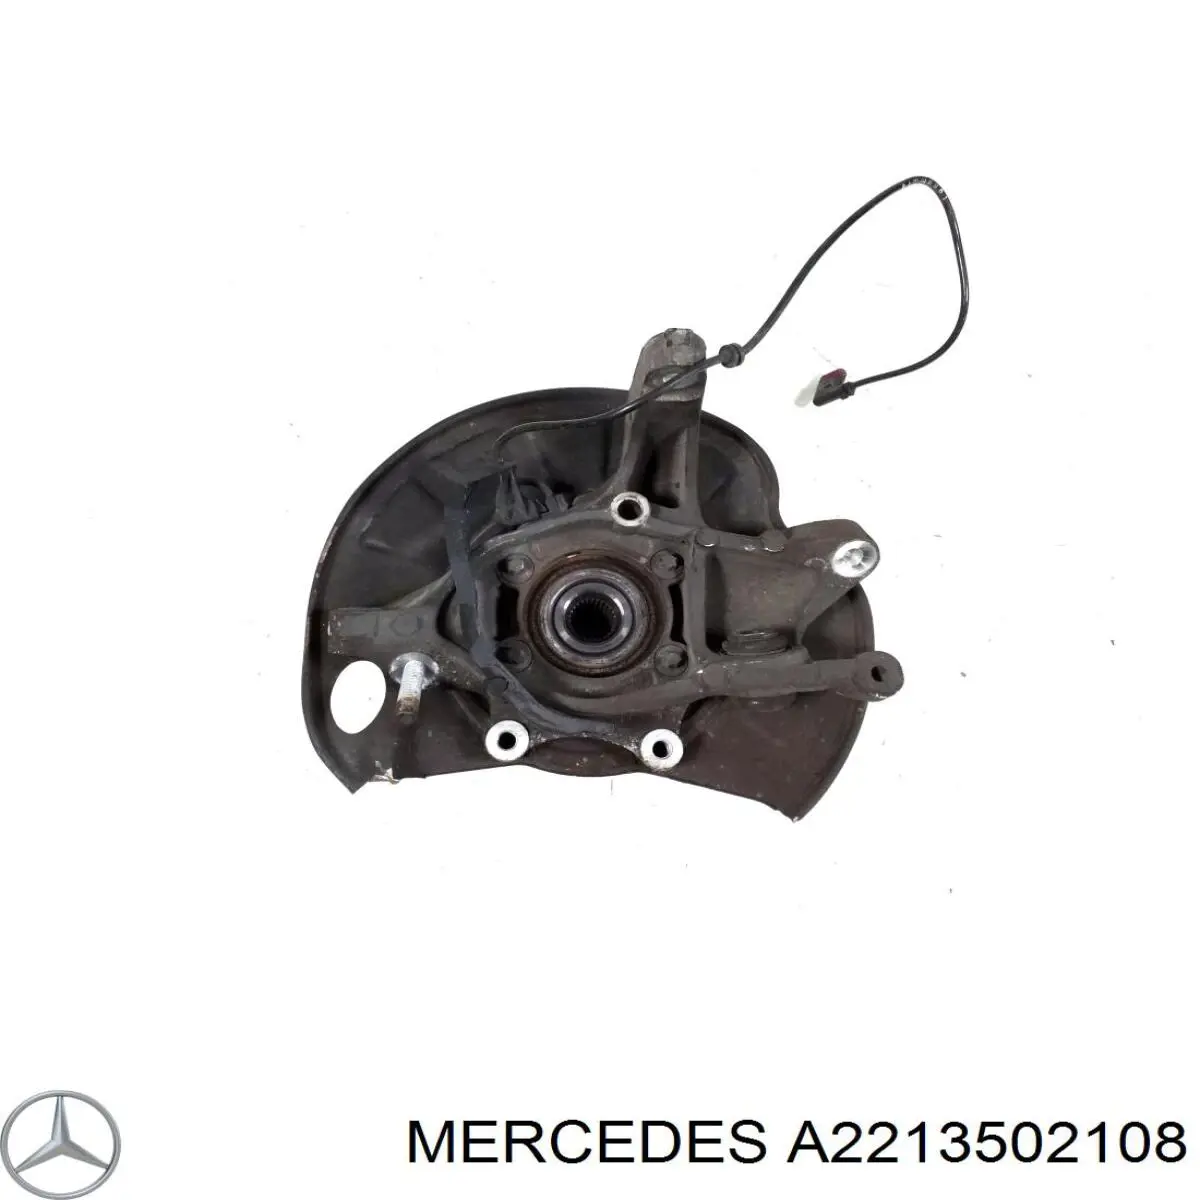 Pino moente (extremidade do eixo) traseiro esquerdo para Mercedes S (W221)